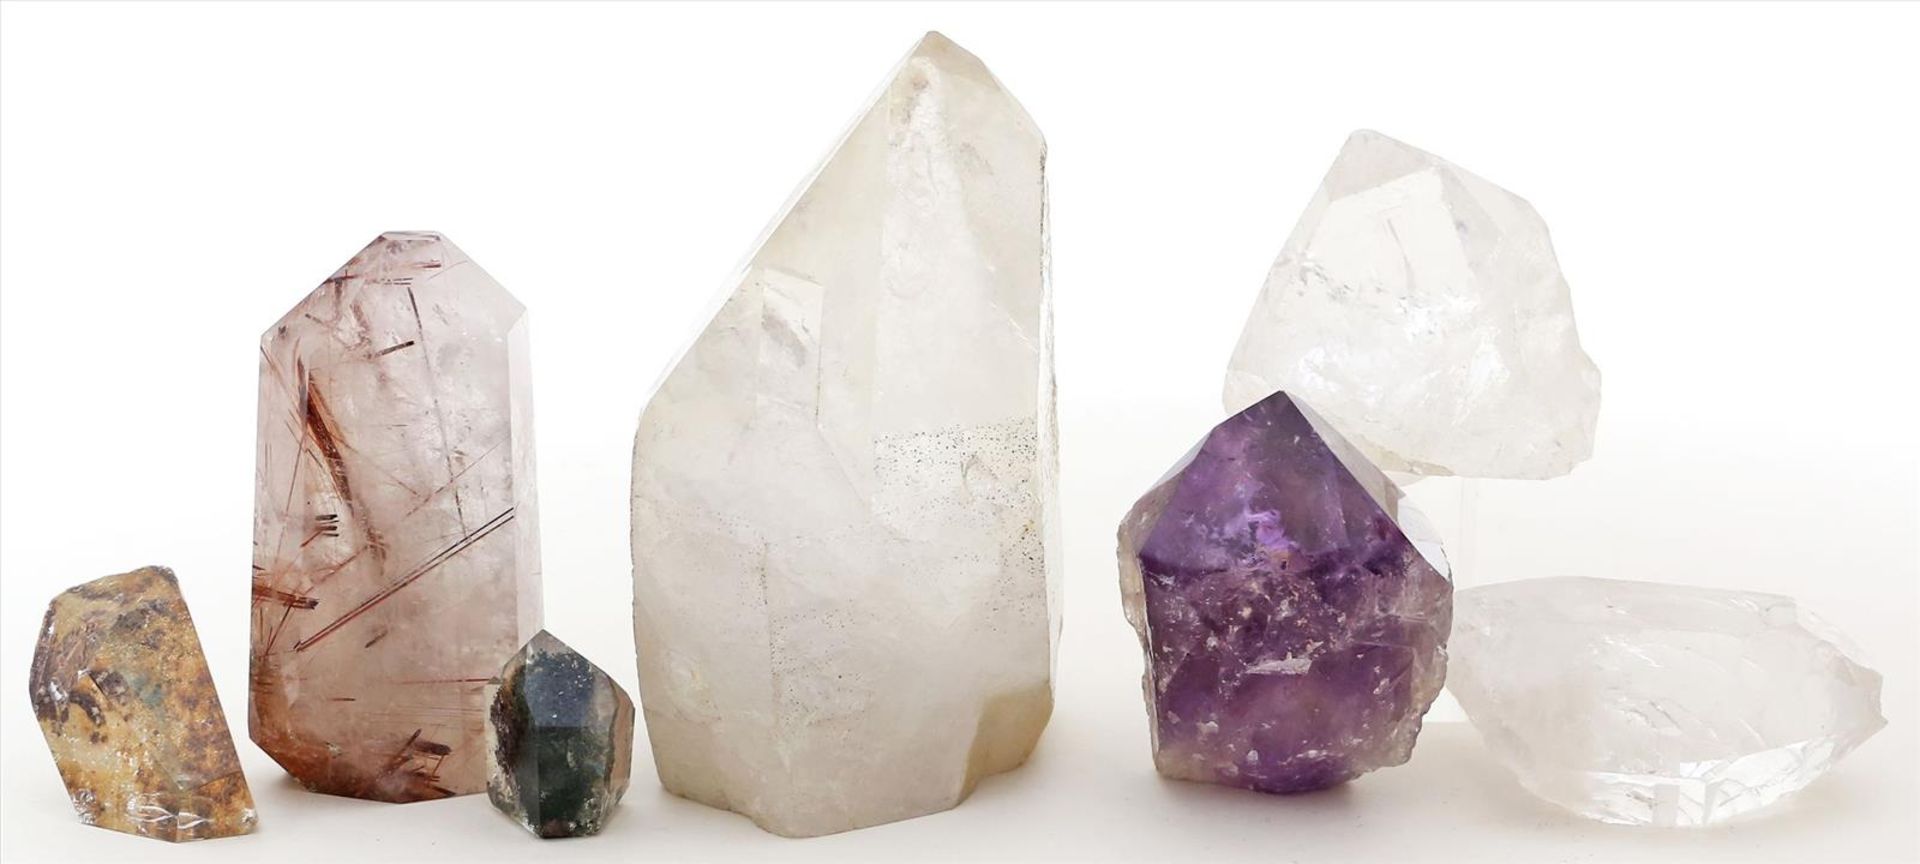 7 Kristallspitzen vonBergkristall und 1x Amethyst, teils mit Einschlüssen anderer Mineralien. L. 3,5